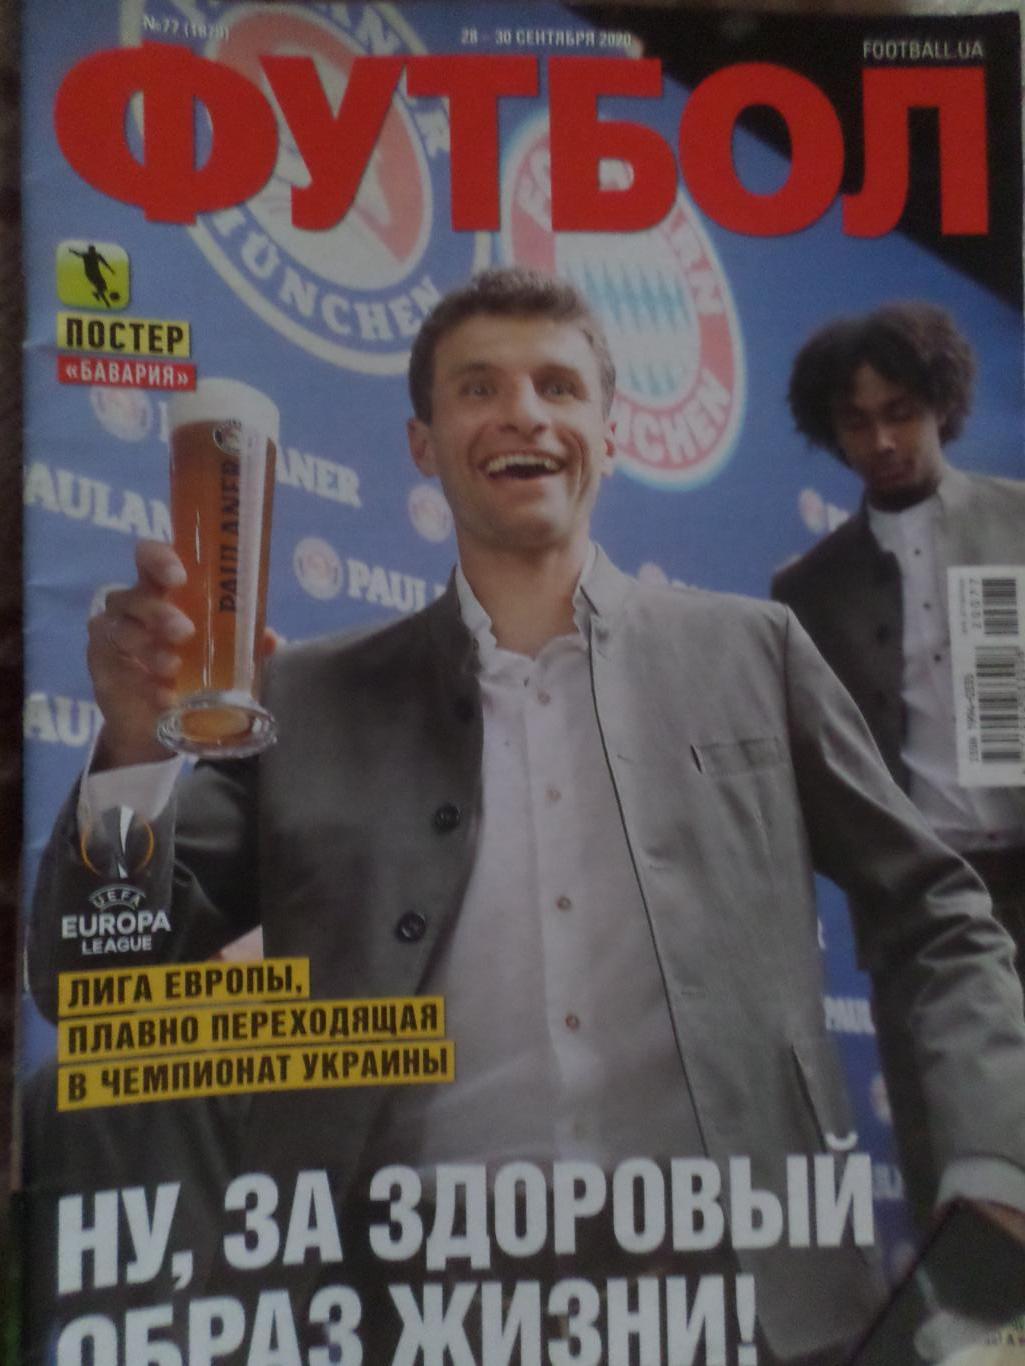 Еженедельник Футбол, Киев, № 77 2020 год